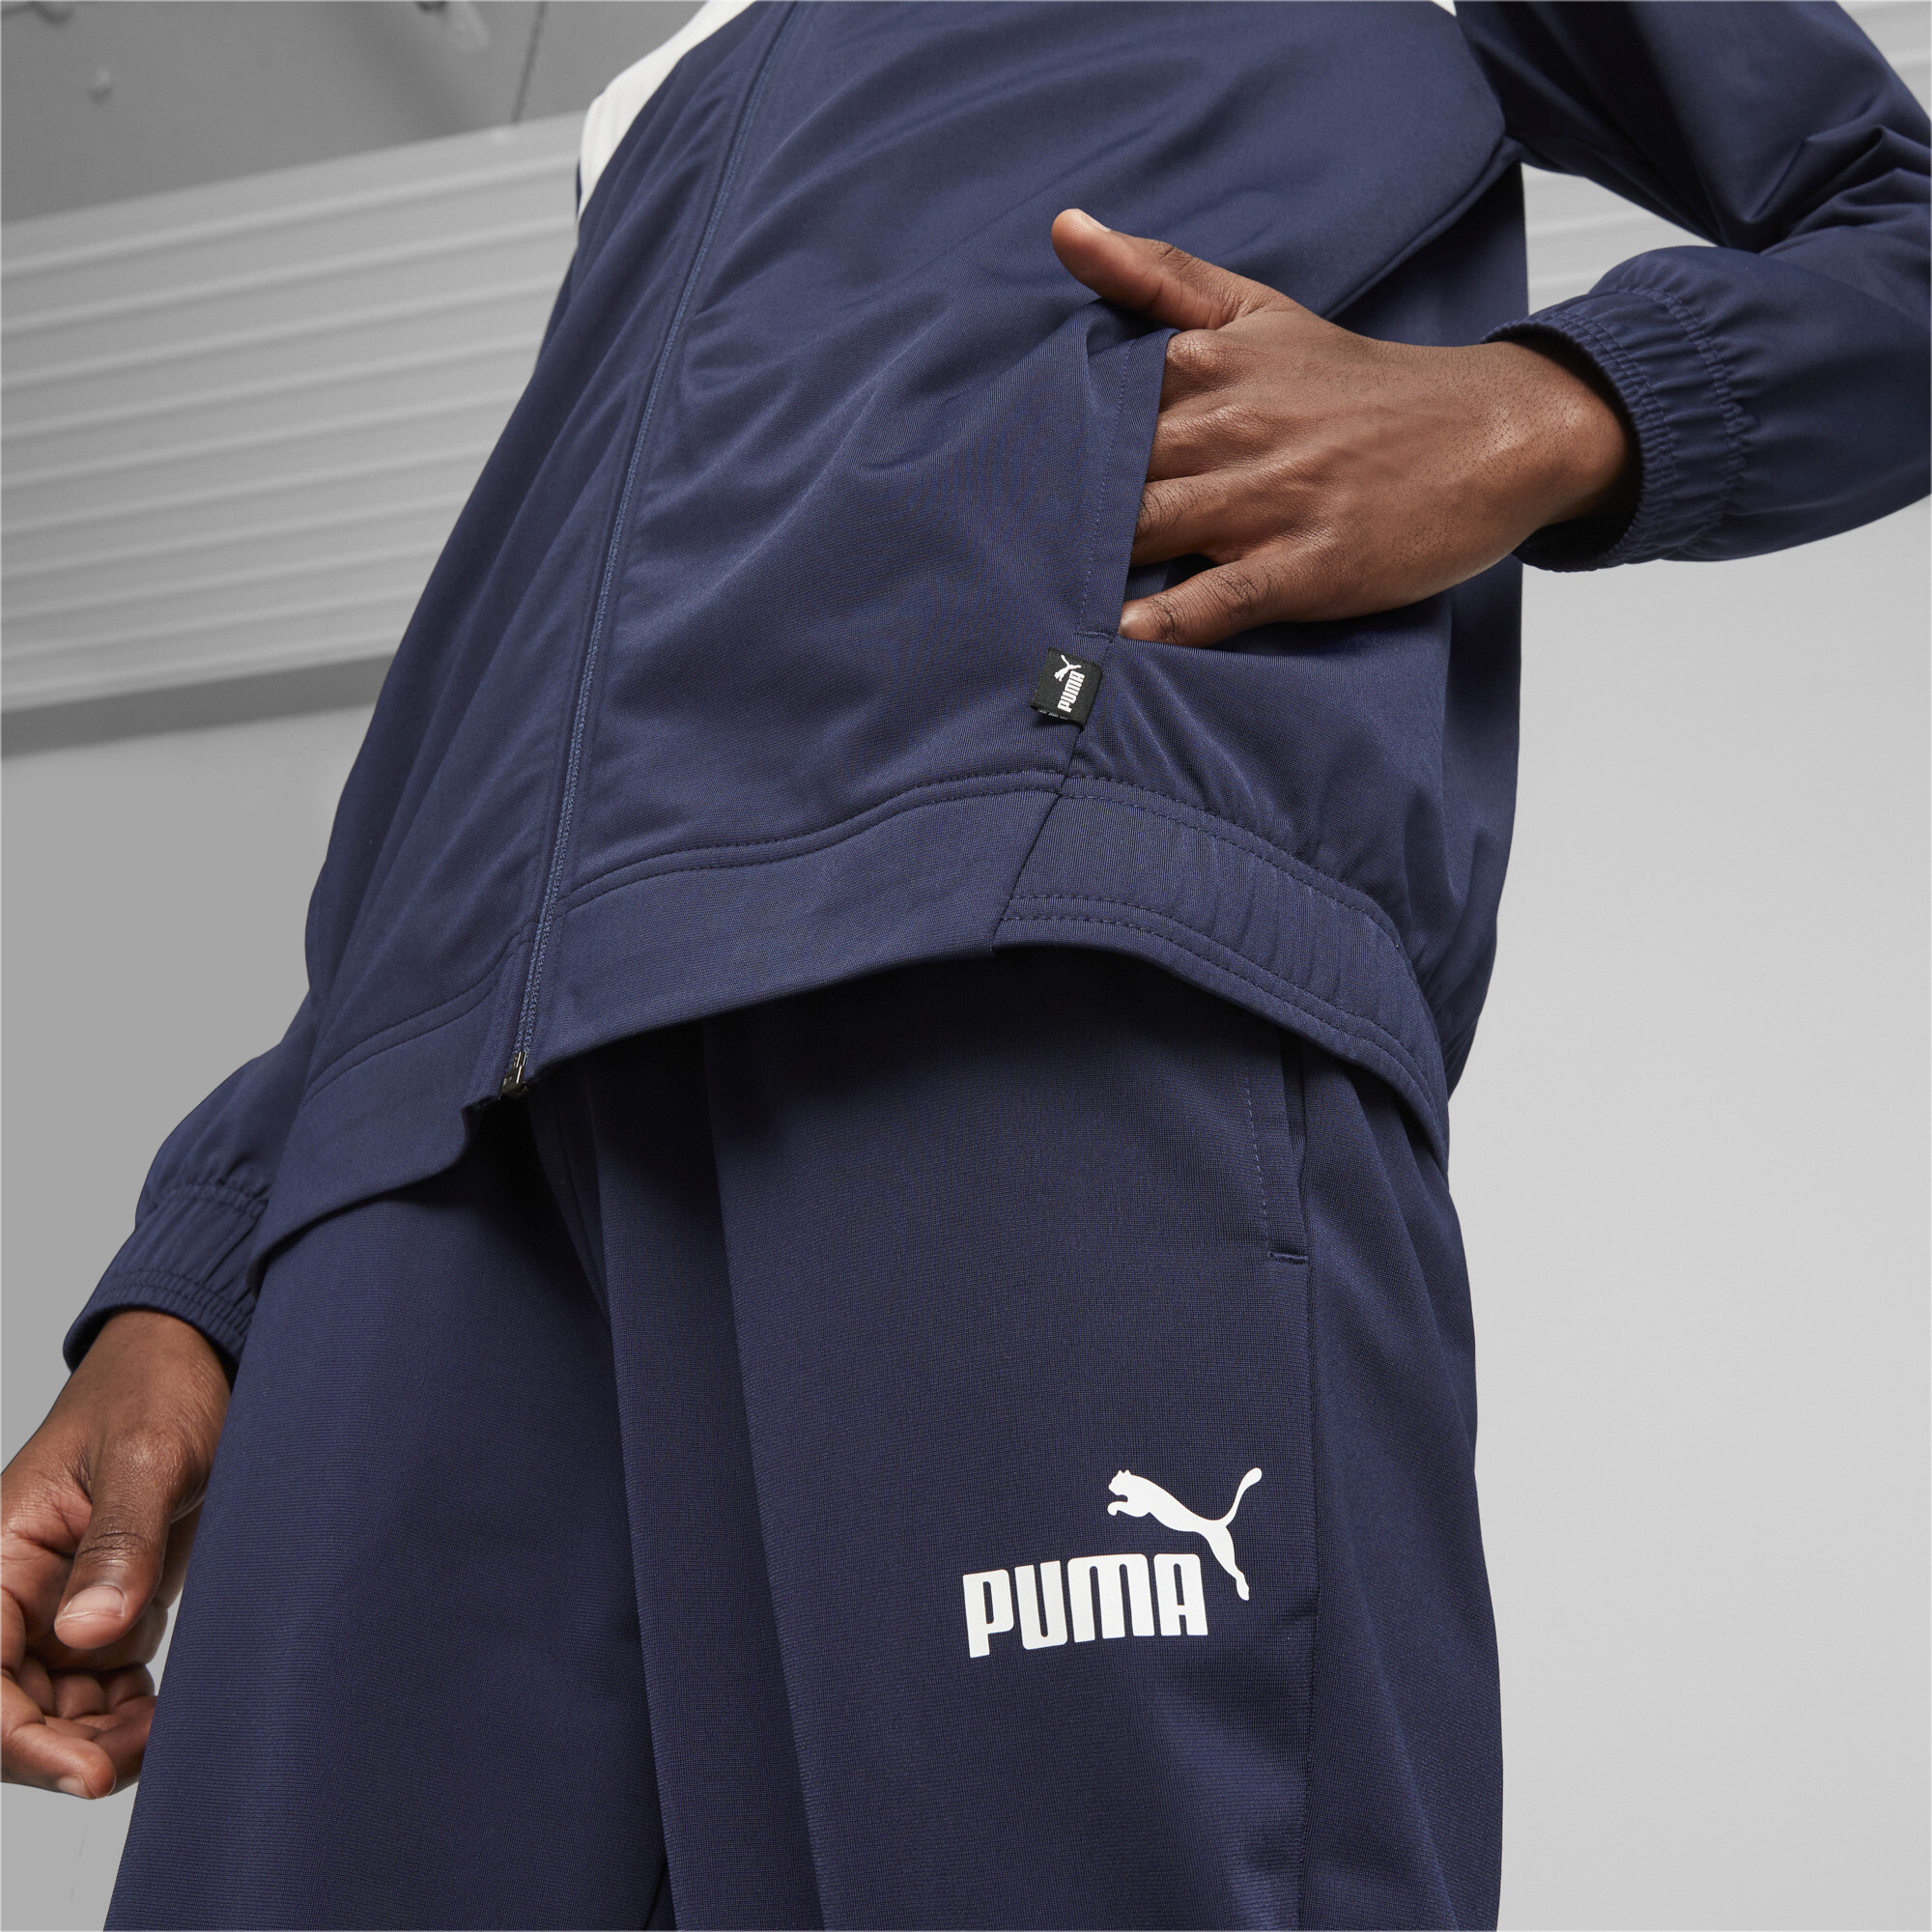 Men's Puma Men's Poly Tracksuit, Blue, Size 3XL, Clothing